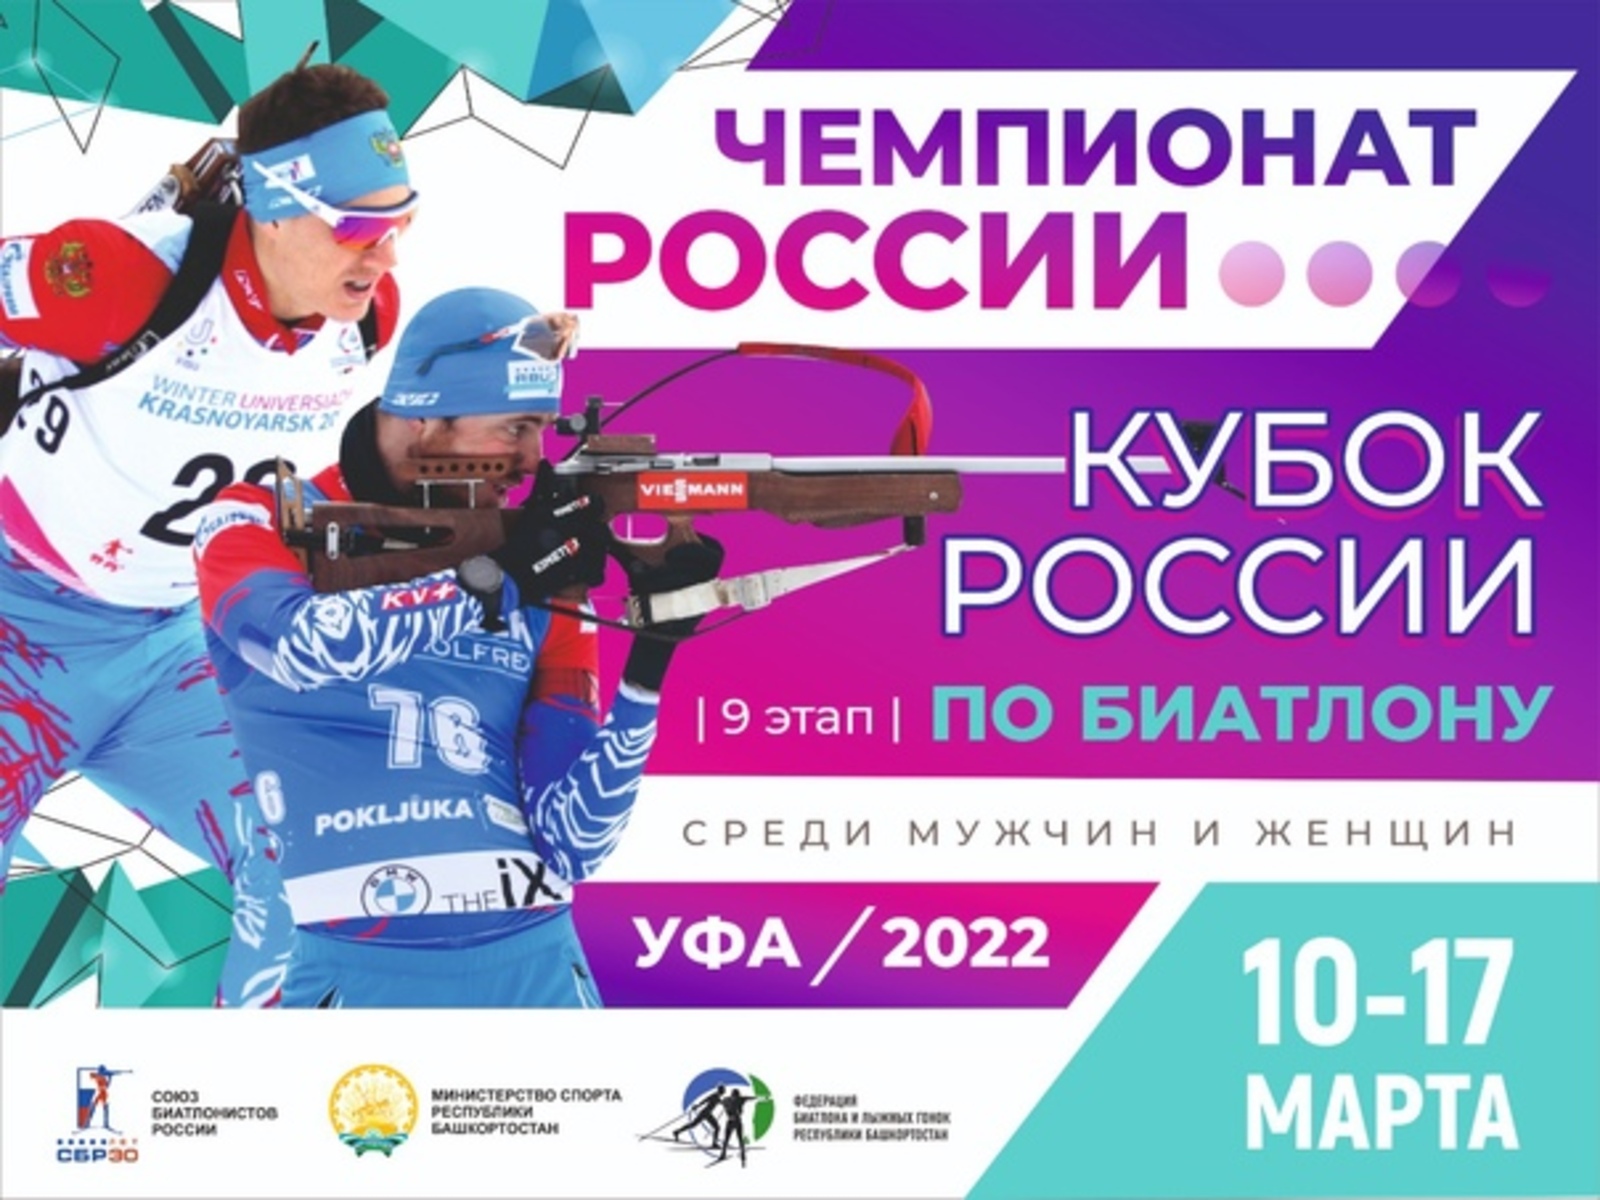 В Уфе пройдет заключительный этап Кубка России и Чемпионат России по биатлону